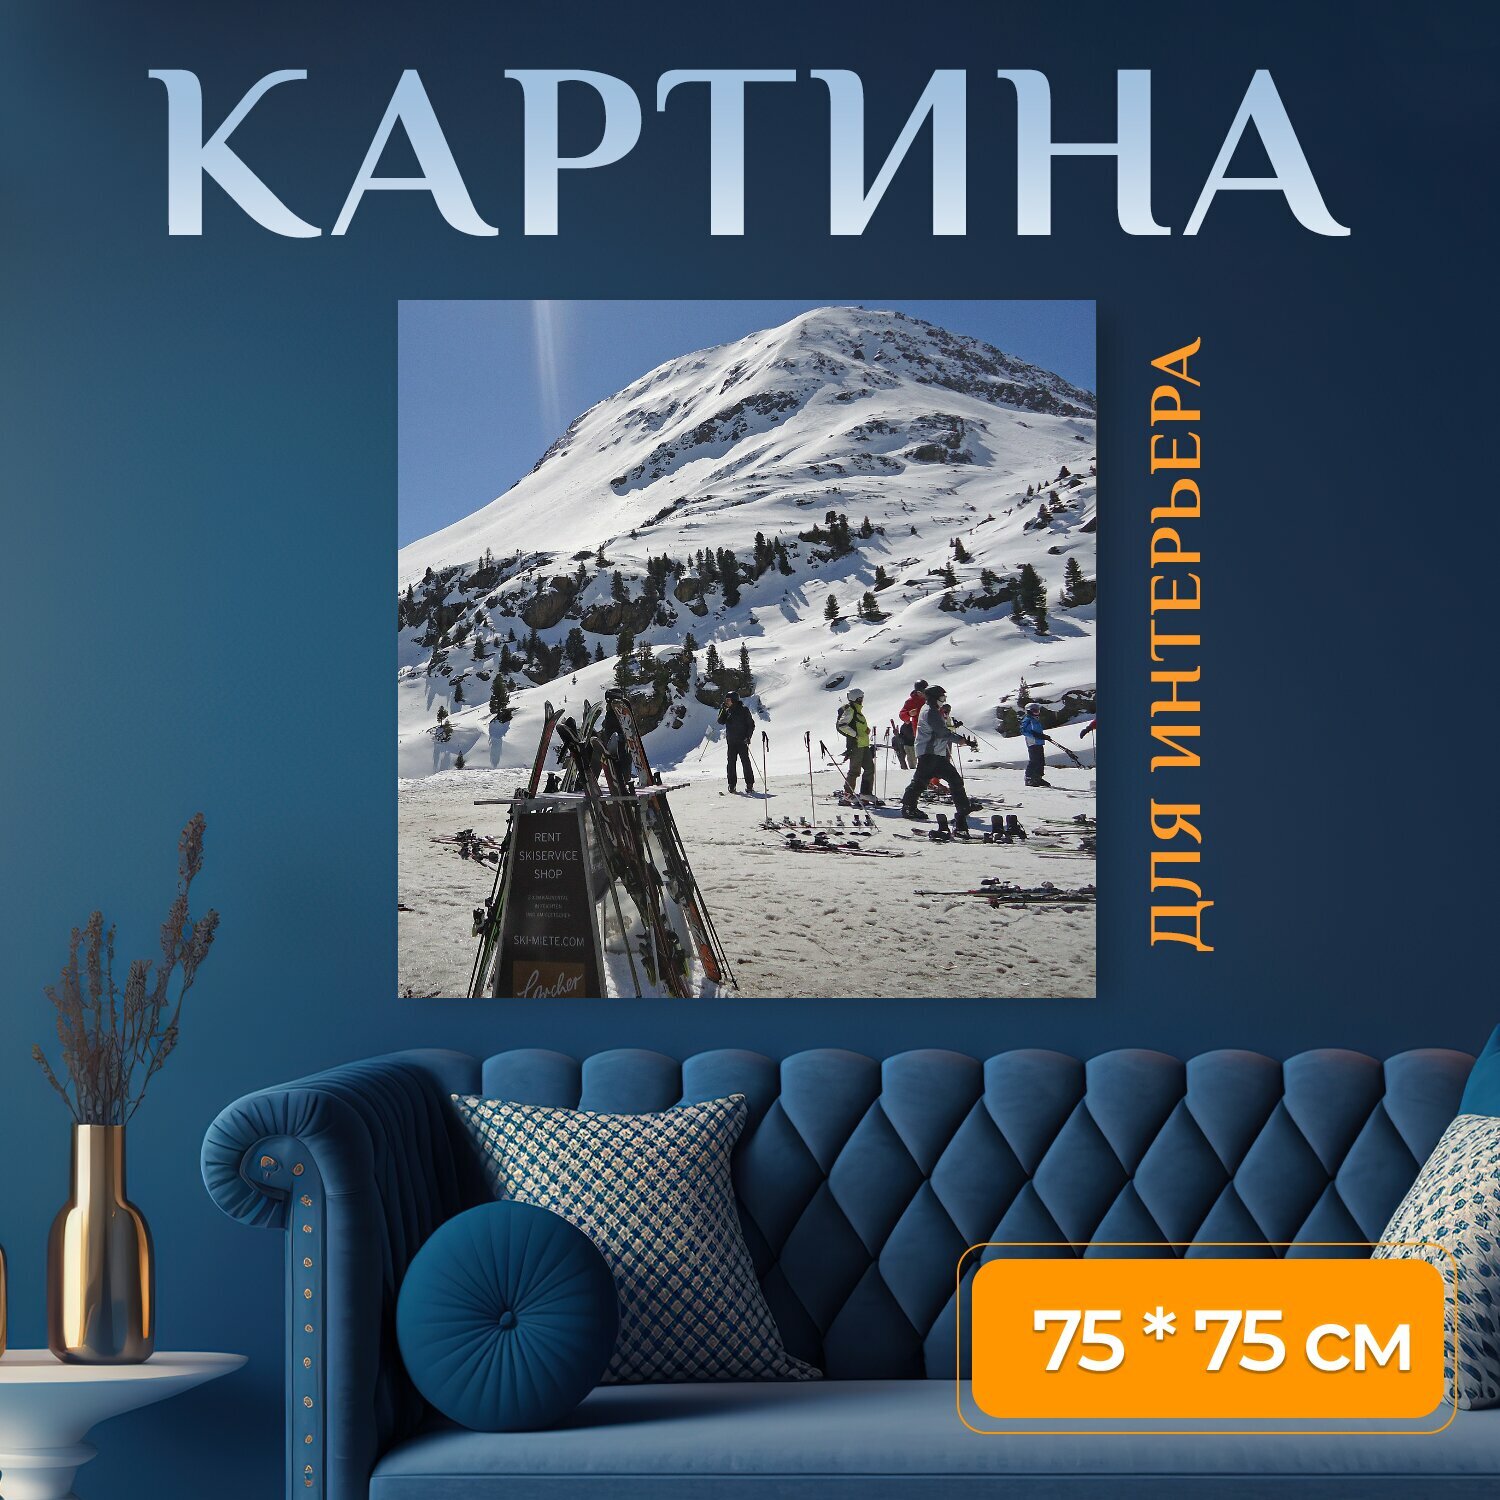 Картина на холсте "Зима, зимние виды спорта, лыжи" на подрамнике 75х75 см. для интерьера